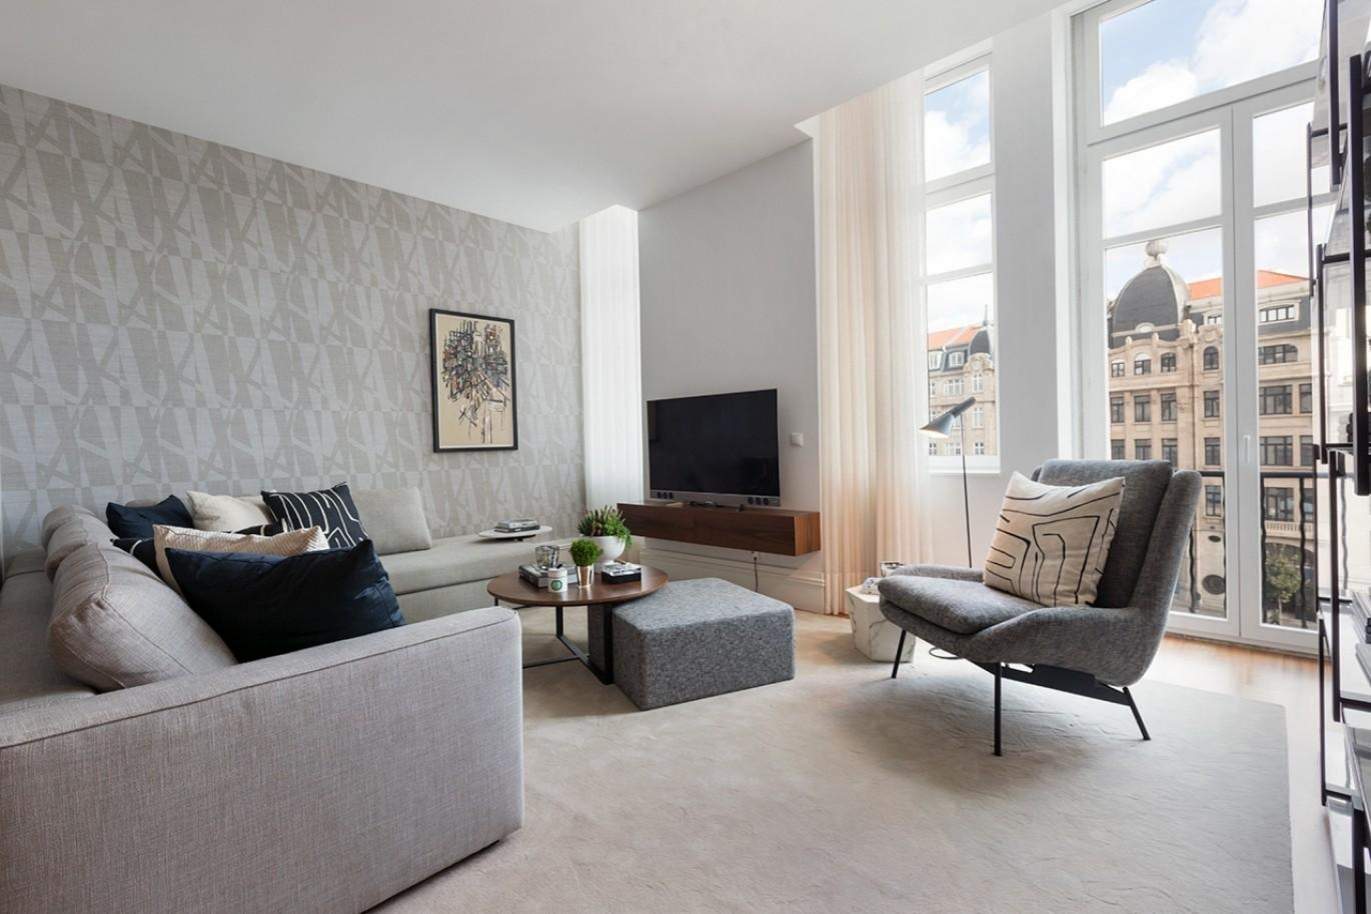 Apartamento moderno com acabamentos de luxo no centro do Porto_177238